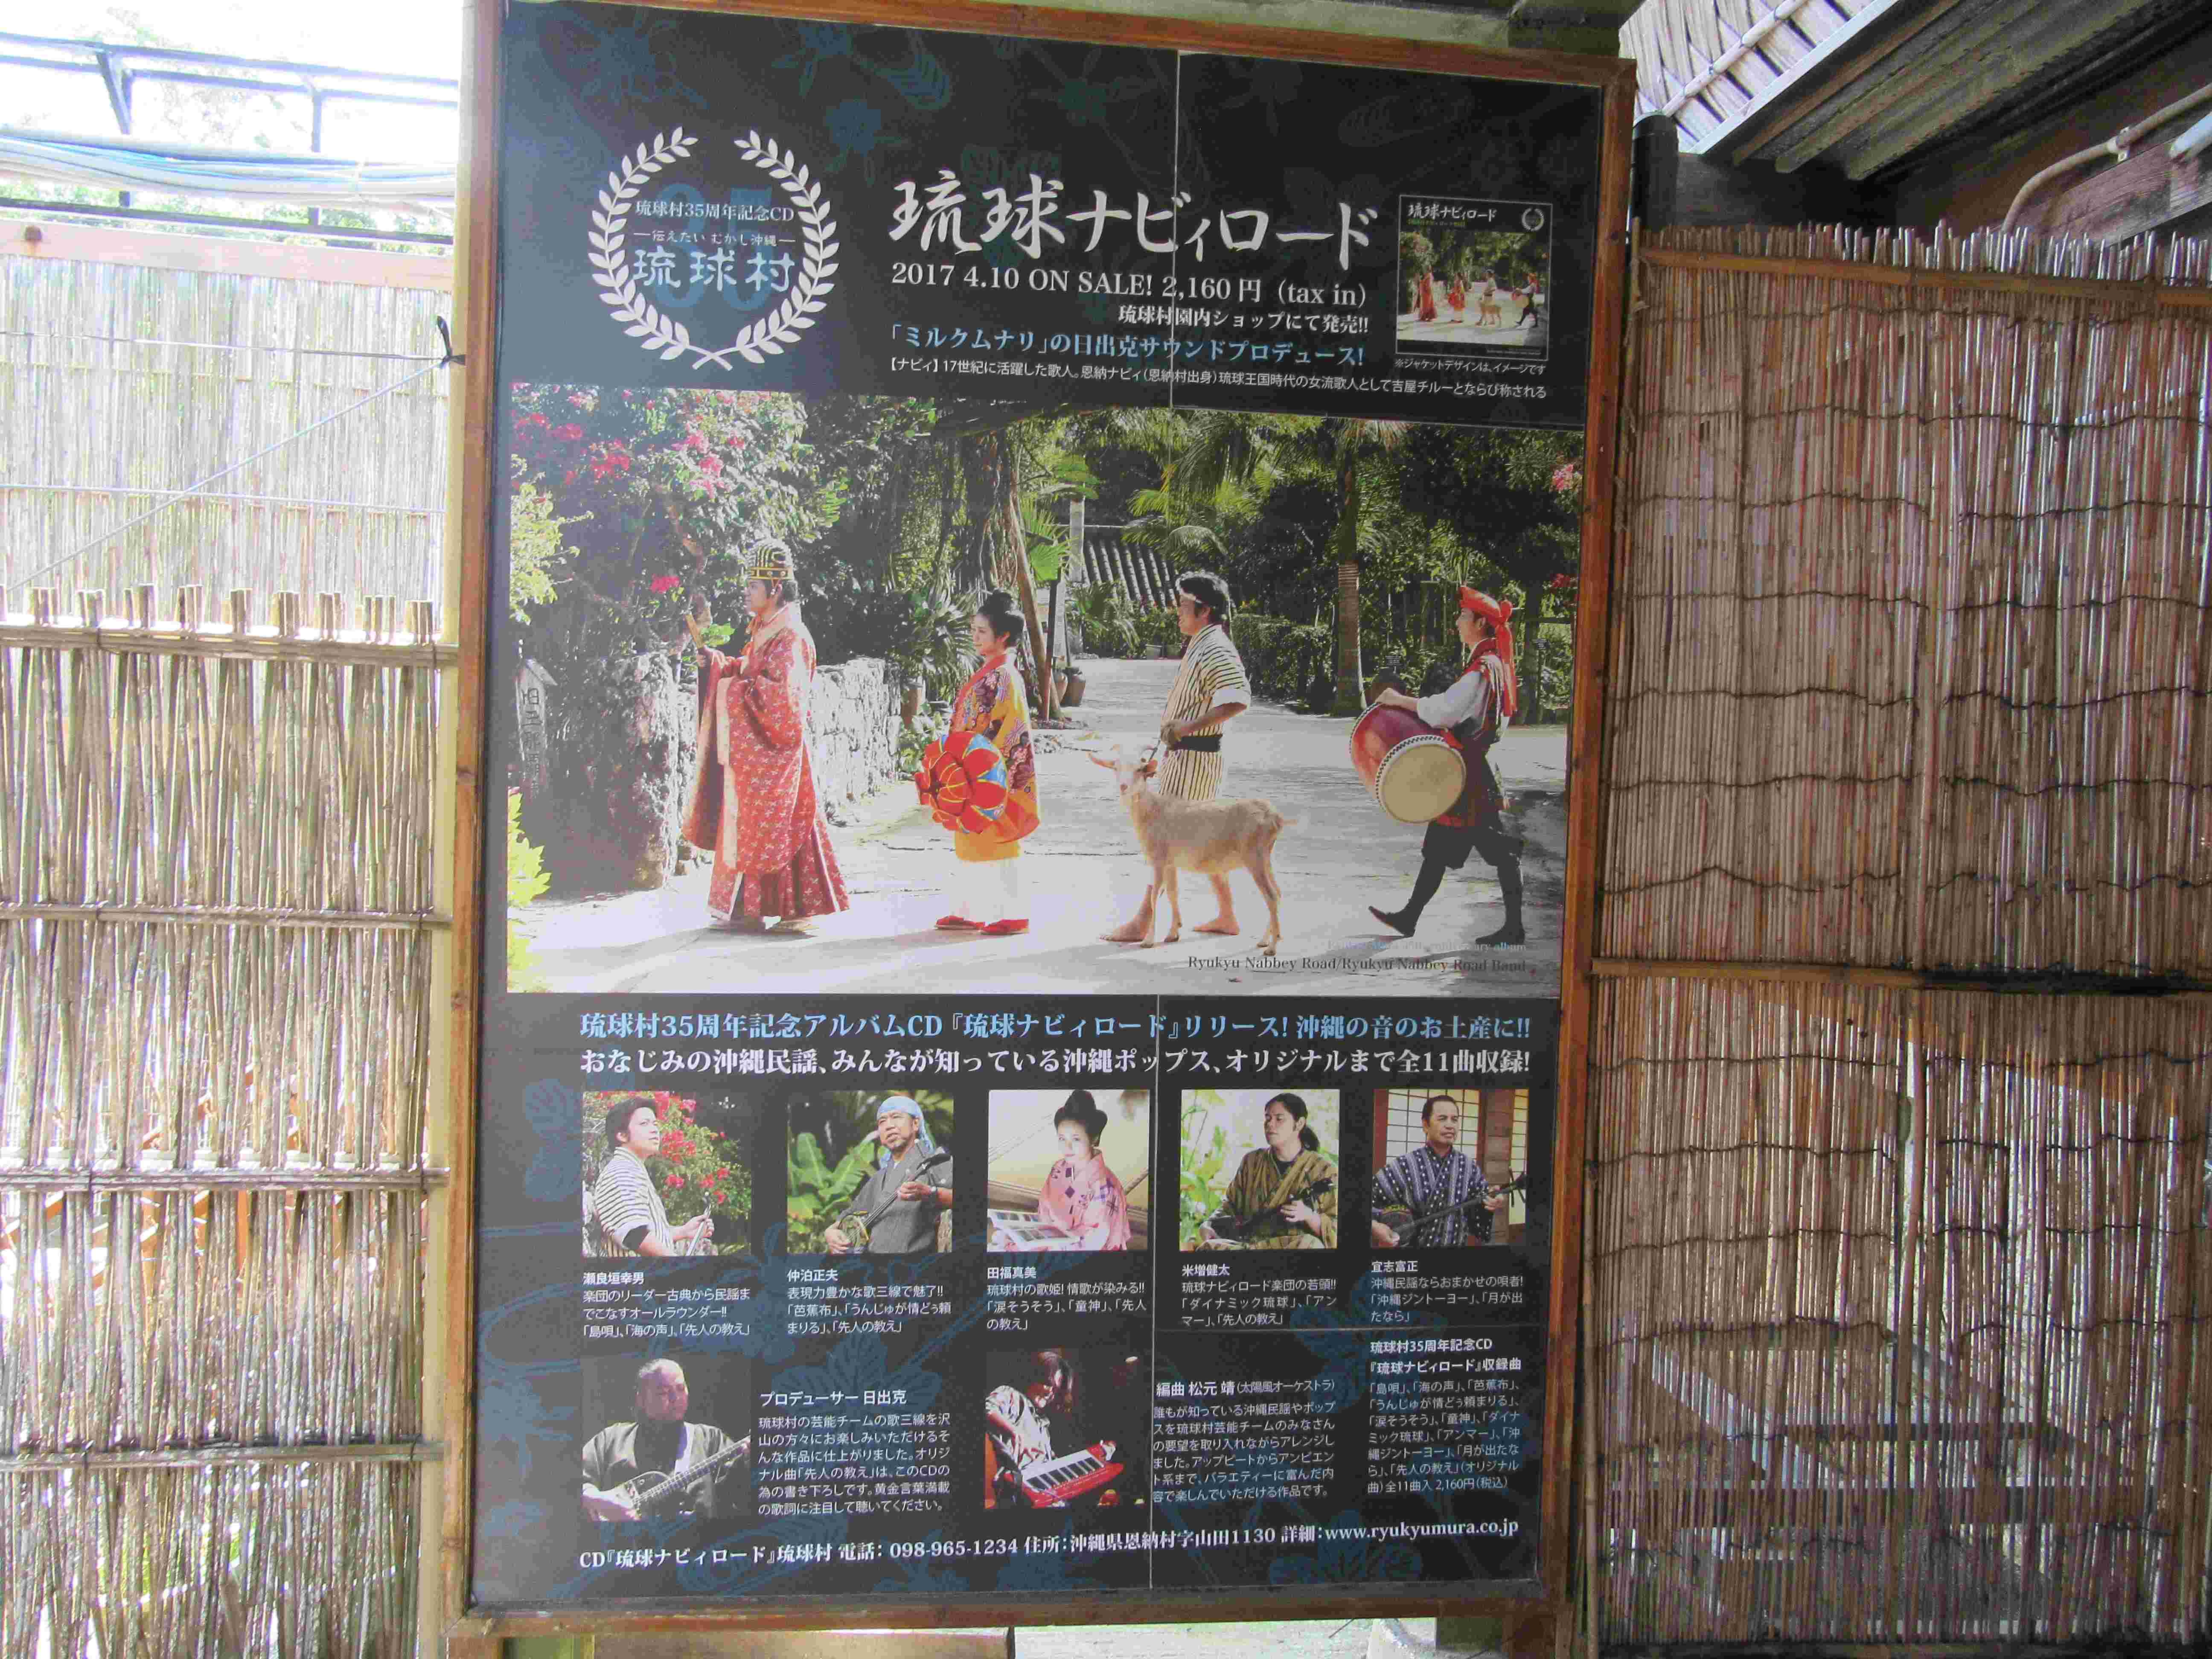 琉球村にあった、『琉球ナビィロード』の紹介。